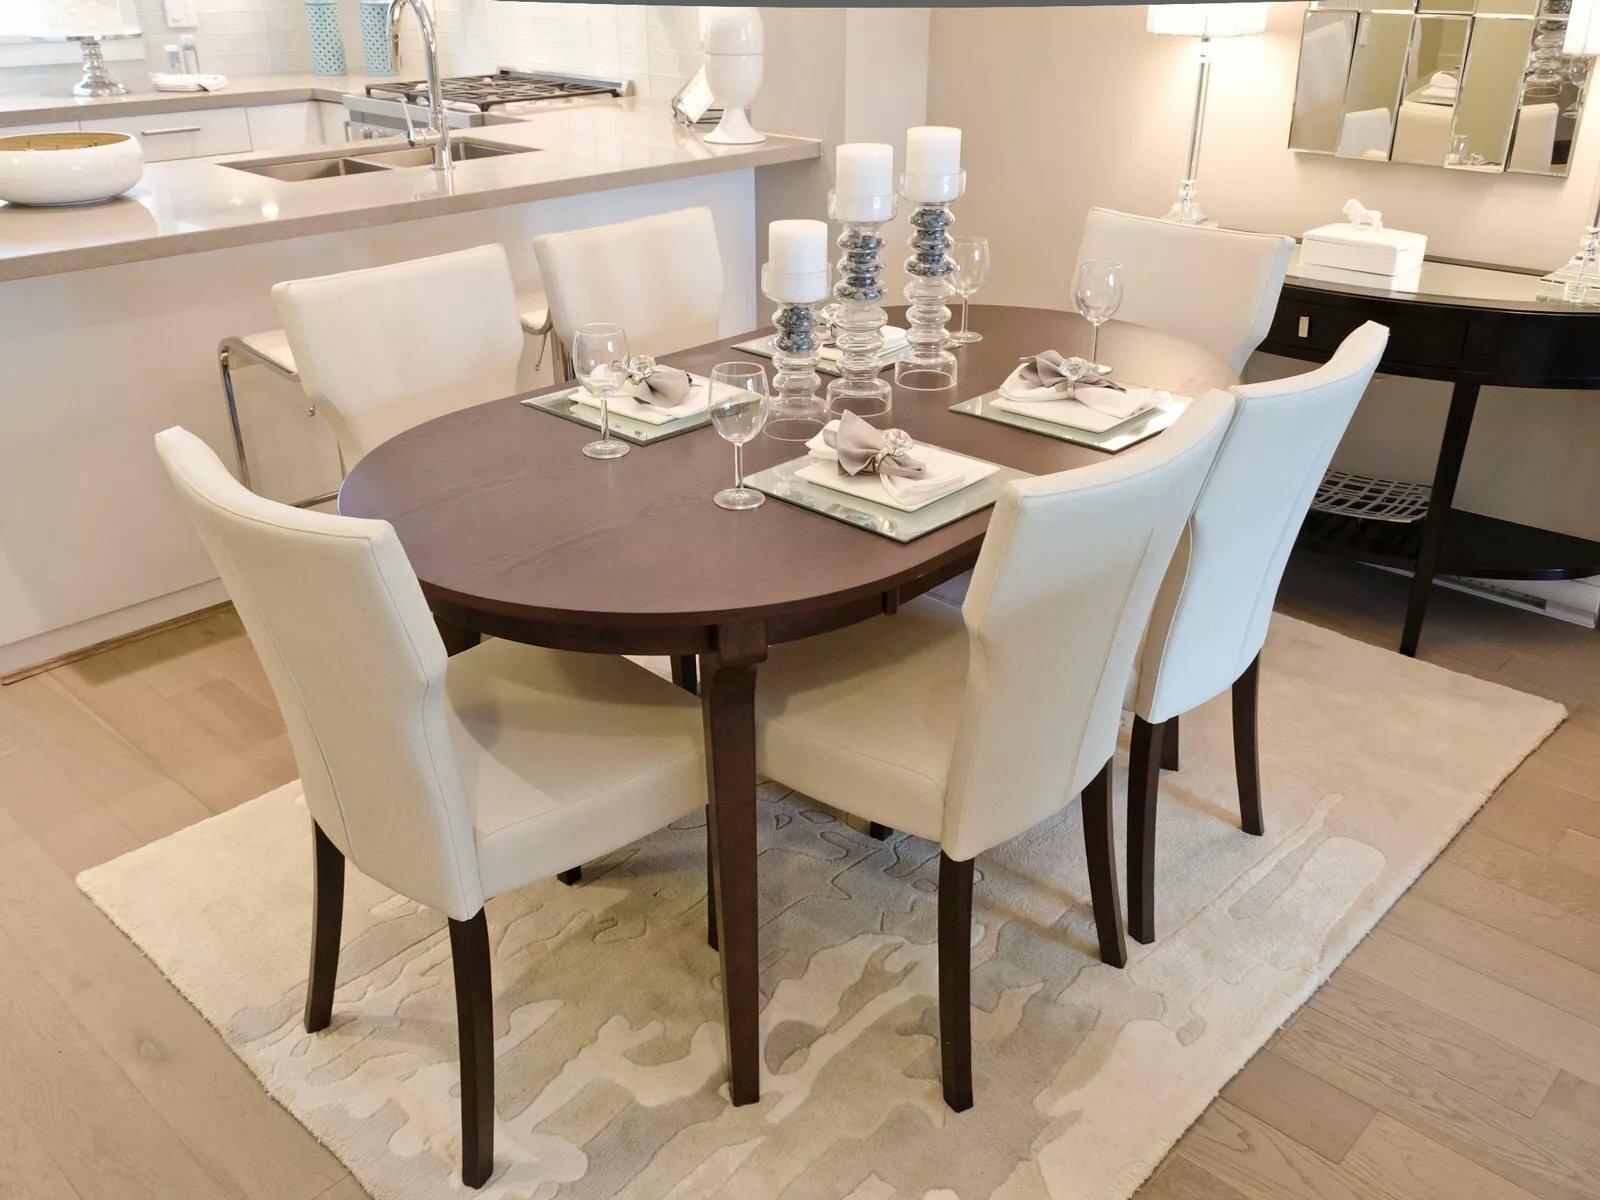 Стол кухонный коричневый. Круглый стол в интерьере. Овальный стол на кухню. Круглый стол на кухню. Круглый стол в интерьере кухни.